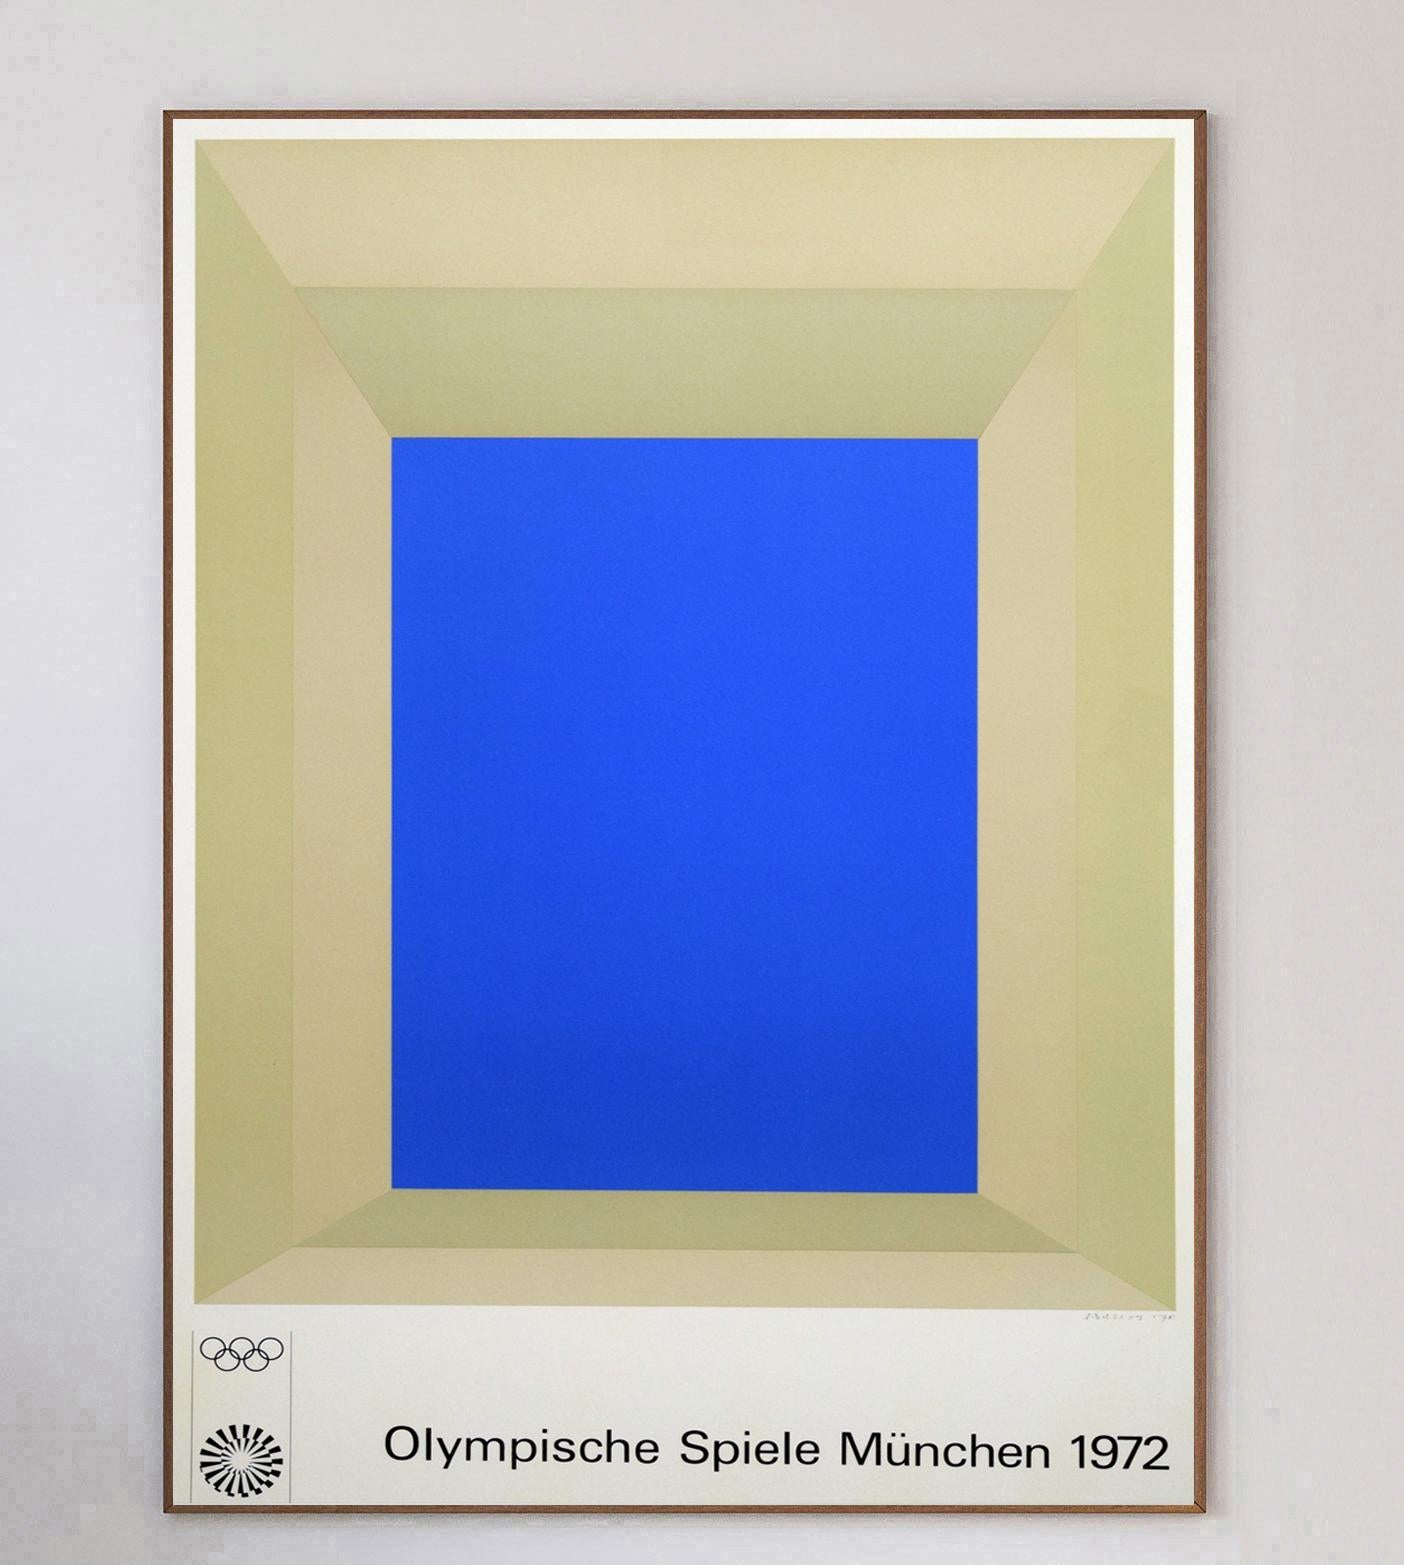 Der deutsche Maler Josef Albers war einer von 29 Künstlern, die mit der Gestaltung von Plakaten für die Olympischen Spiele 1972 in München beauftragt wurden. Im Vorfeld der Spiele 1972 beschloss das Organisationskomitee, eine Reihe von